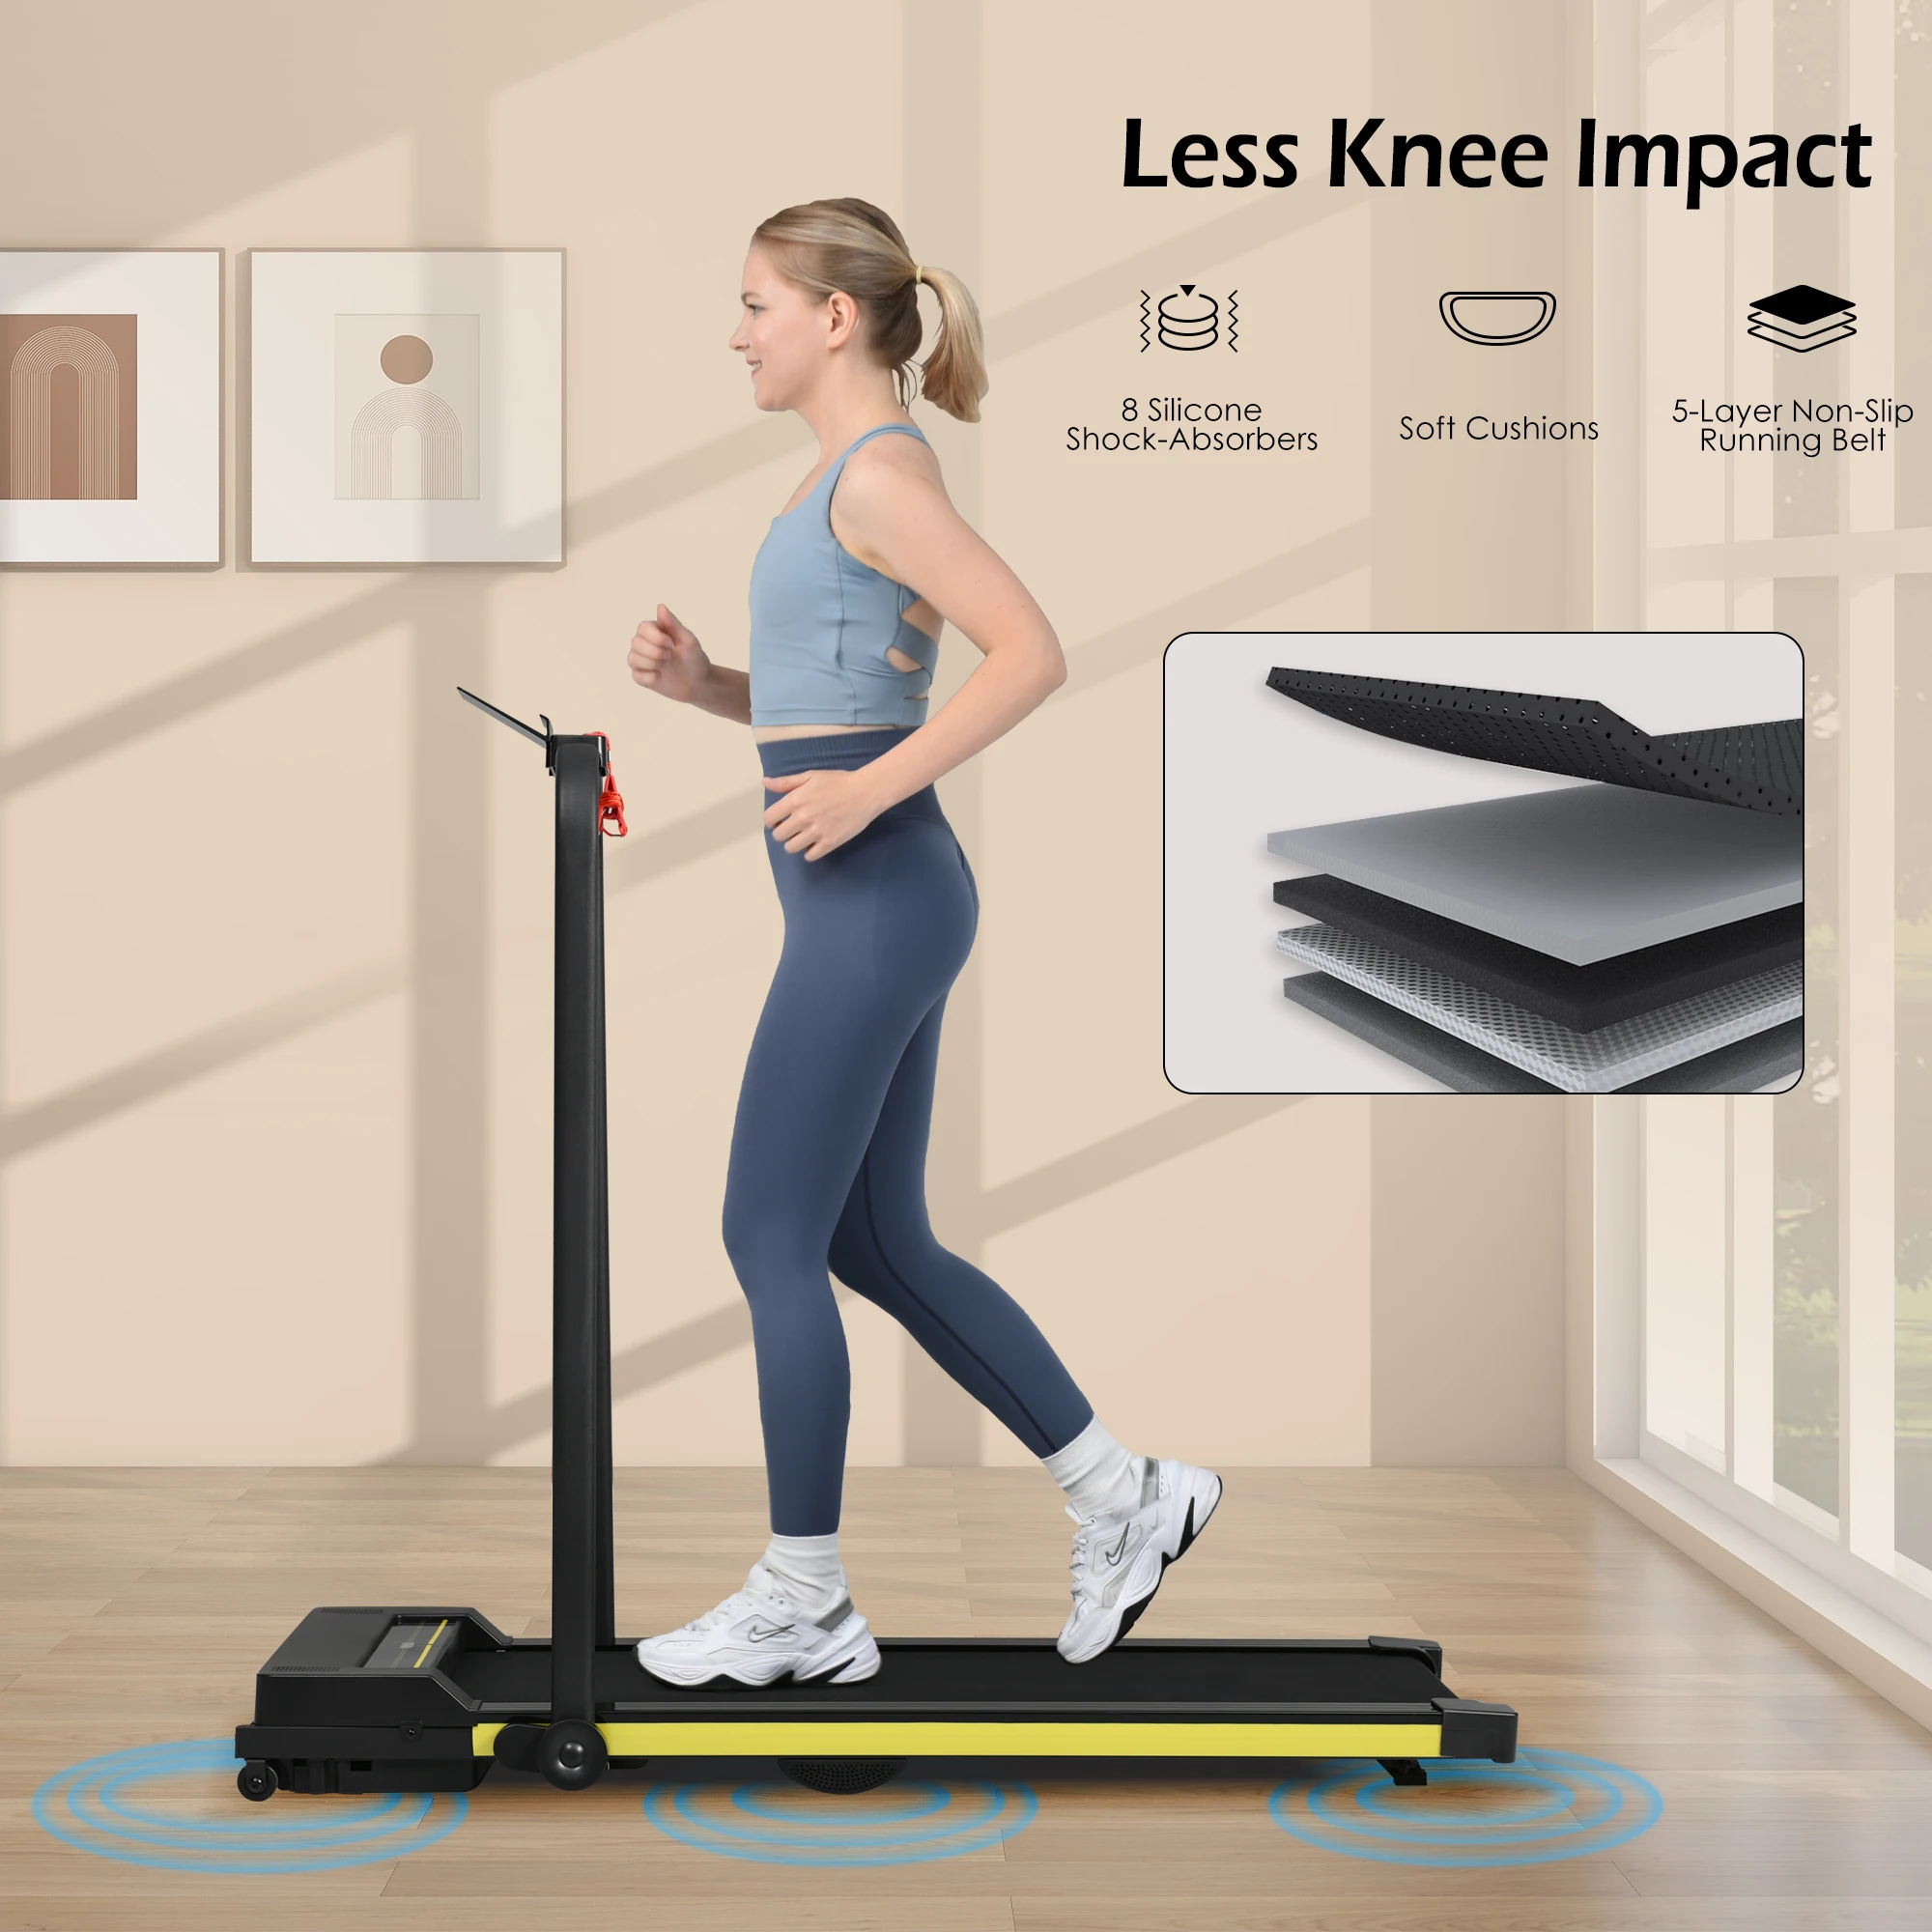 

Treadmill-Walking Pad-Under Desk Treadmill 0.6-7.6MPH 2.5HP 2 in 1 Folding Treadmill-Treadmills for Home and Office